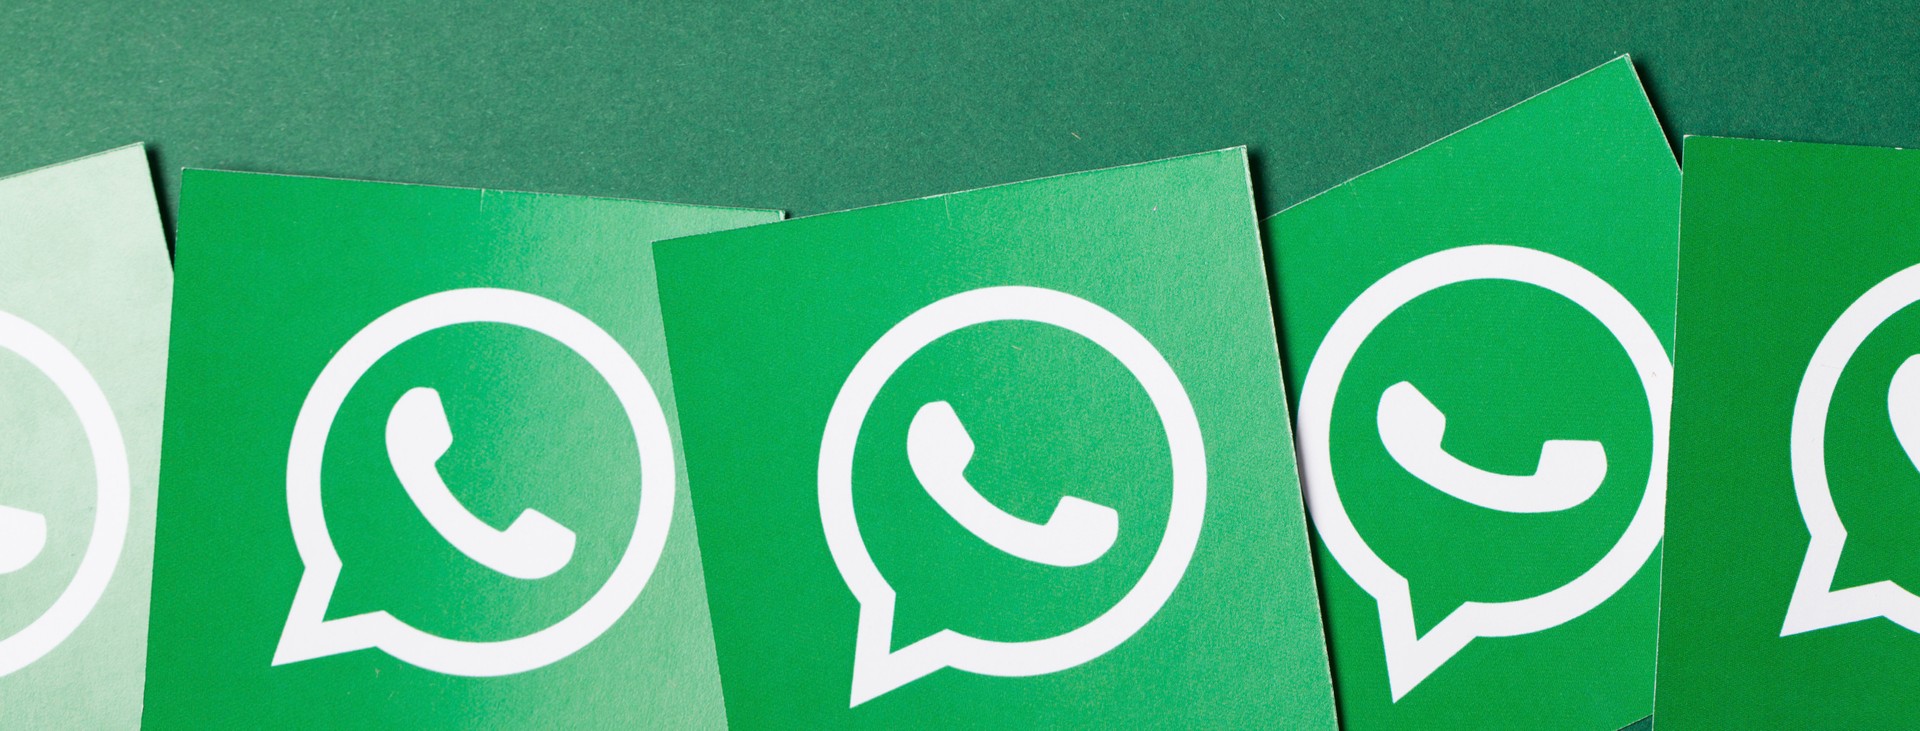 WhatsApp pensa alla vostra vena artistica: novità in arrivo per modificare le immagini